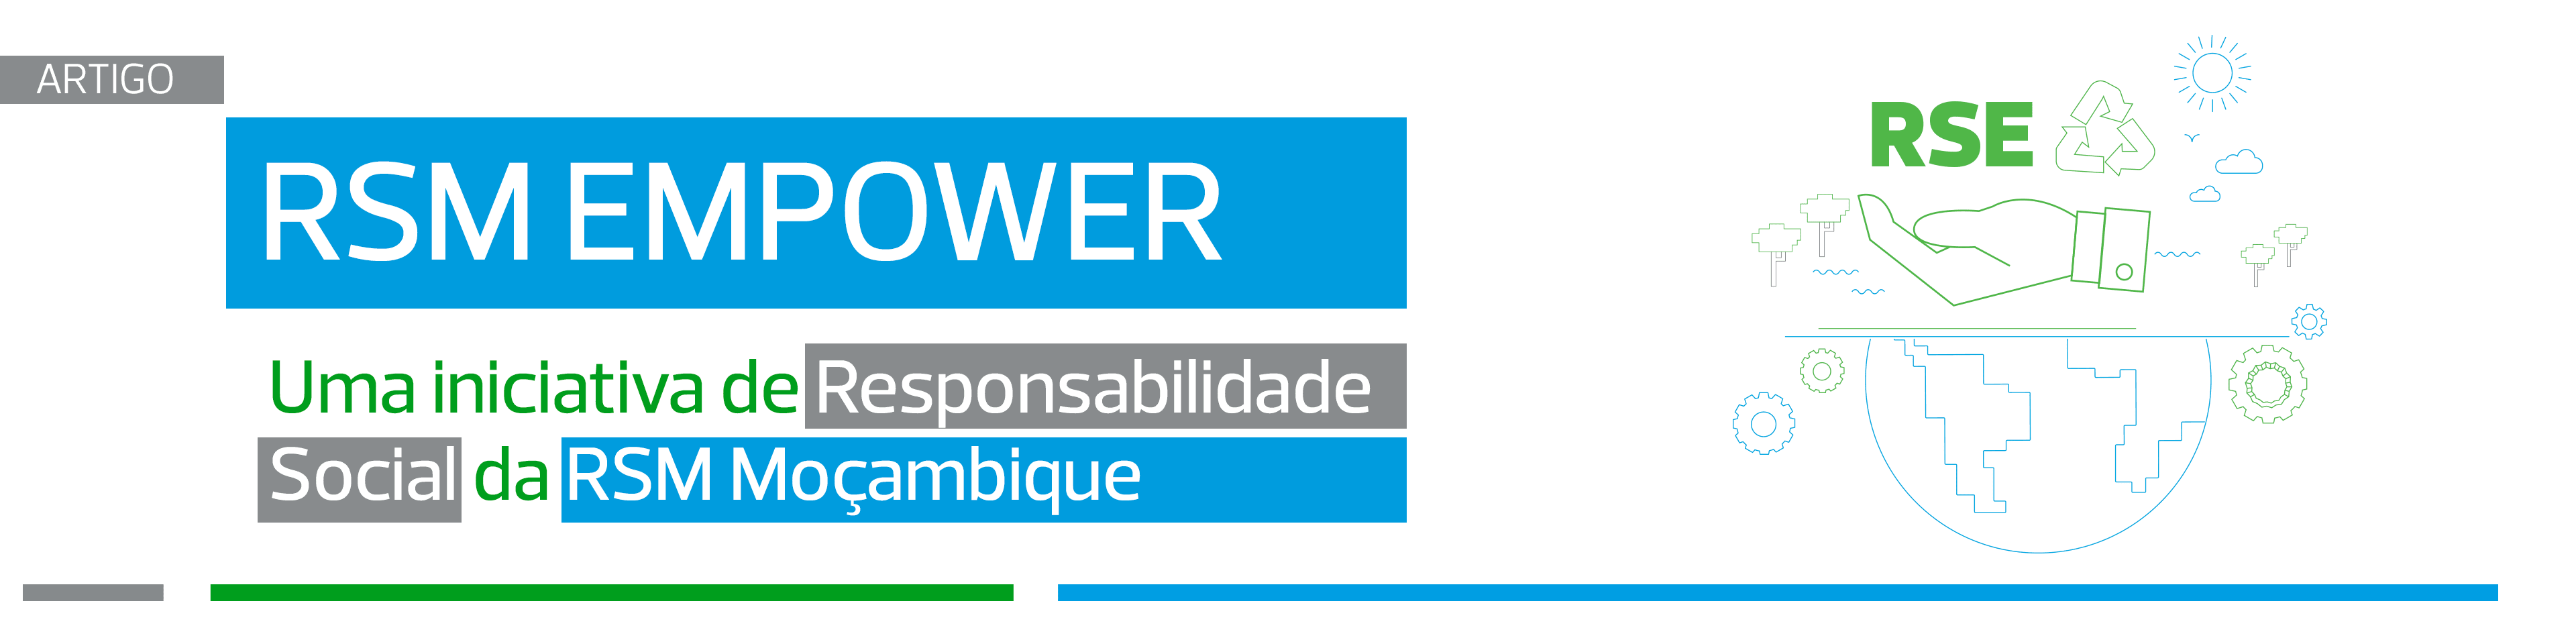 RSM EMPOWER – Uma iniciativa de Responsabilidade Social da RSM Moçambique